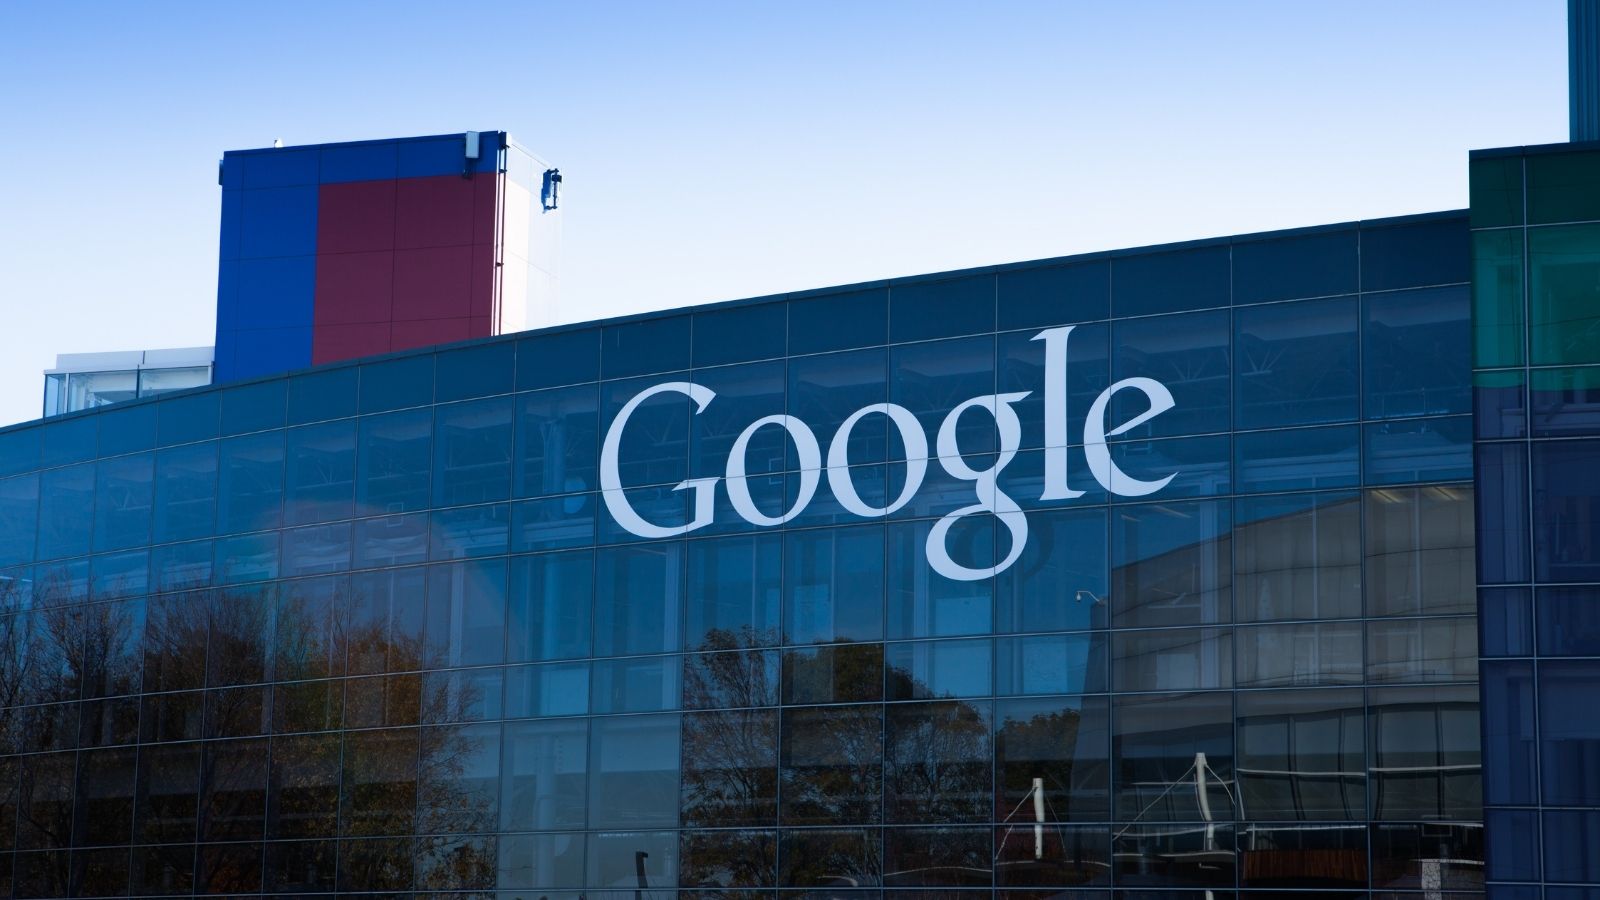 Google A Favore Del Programma Lavoro Coniugi Di Immigrati Giornalettismo